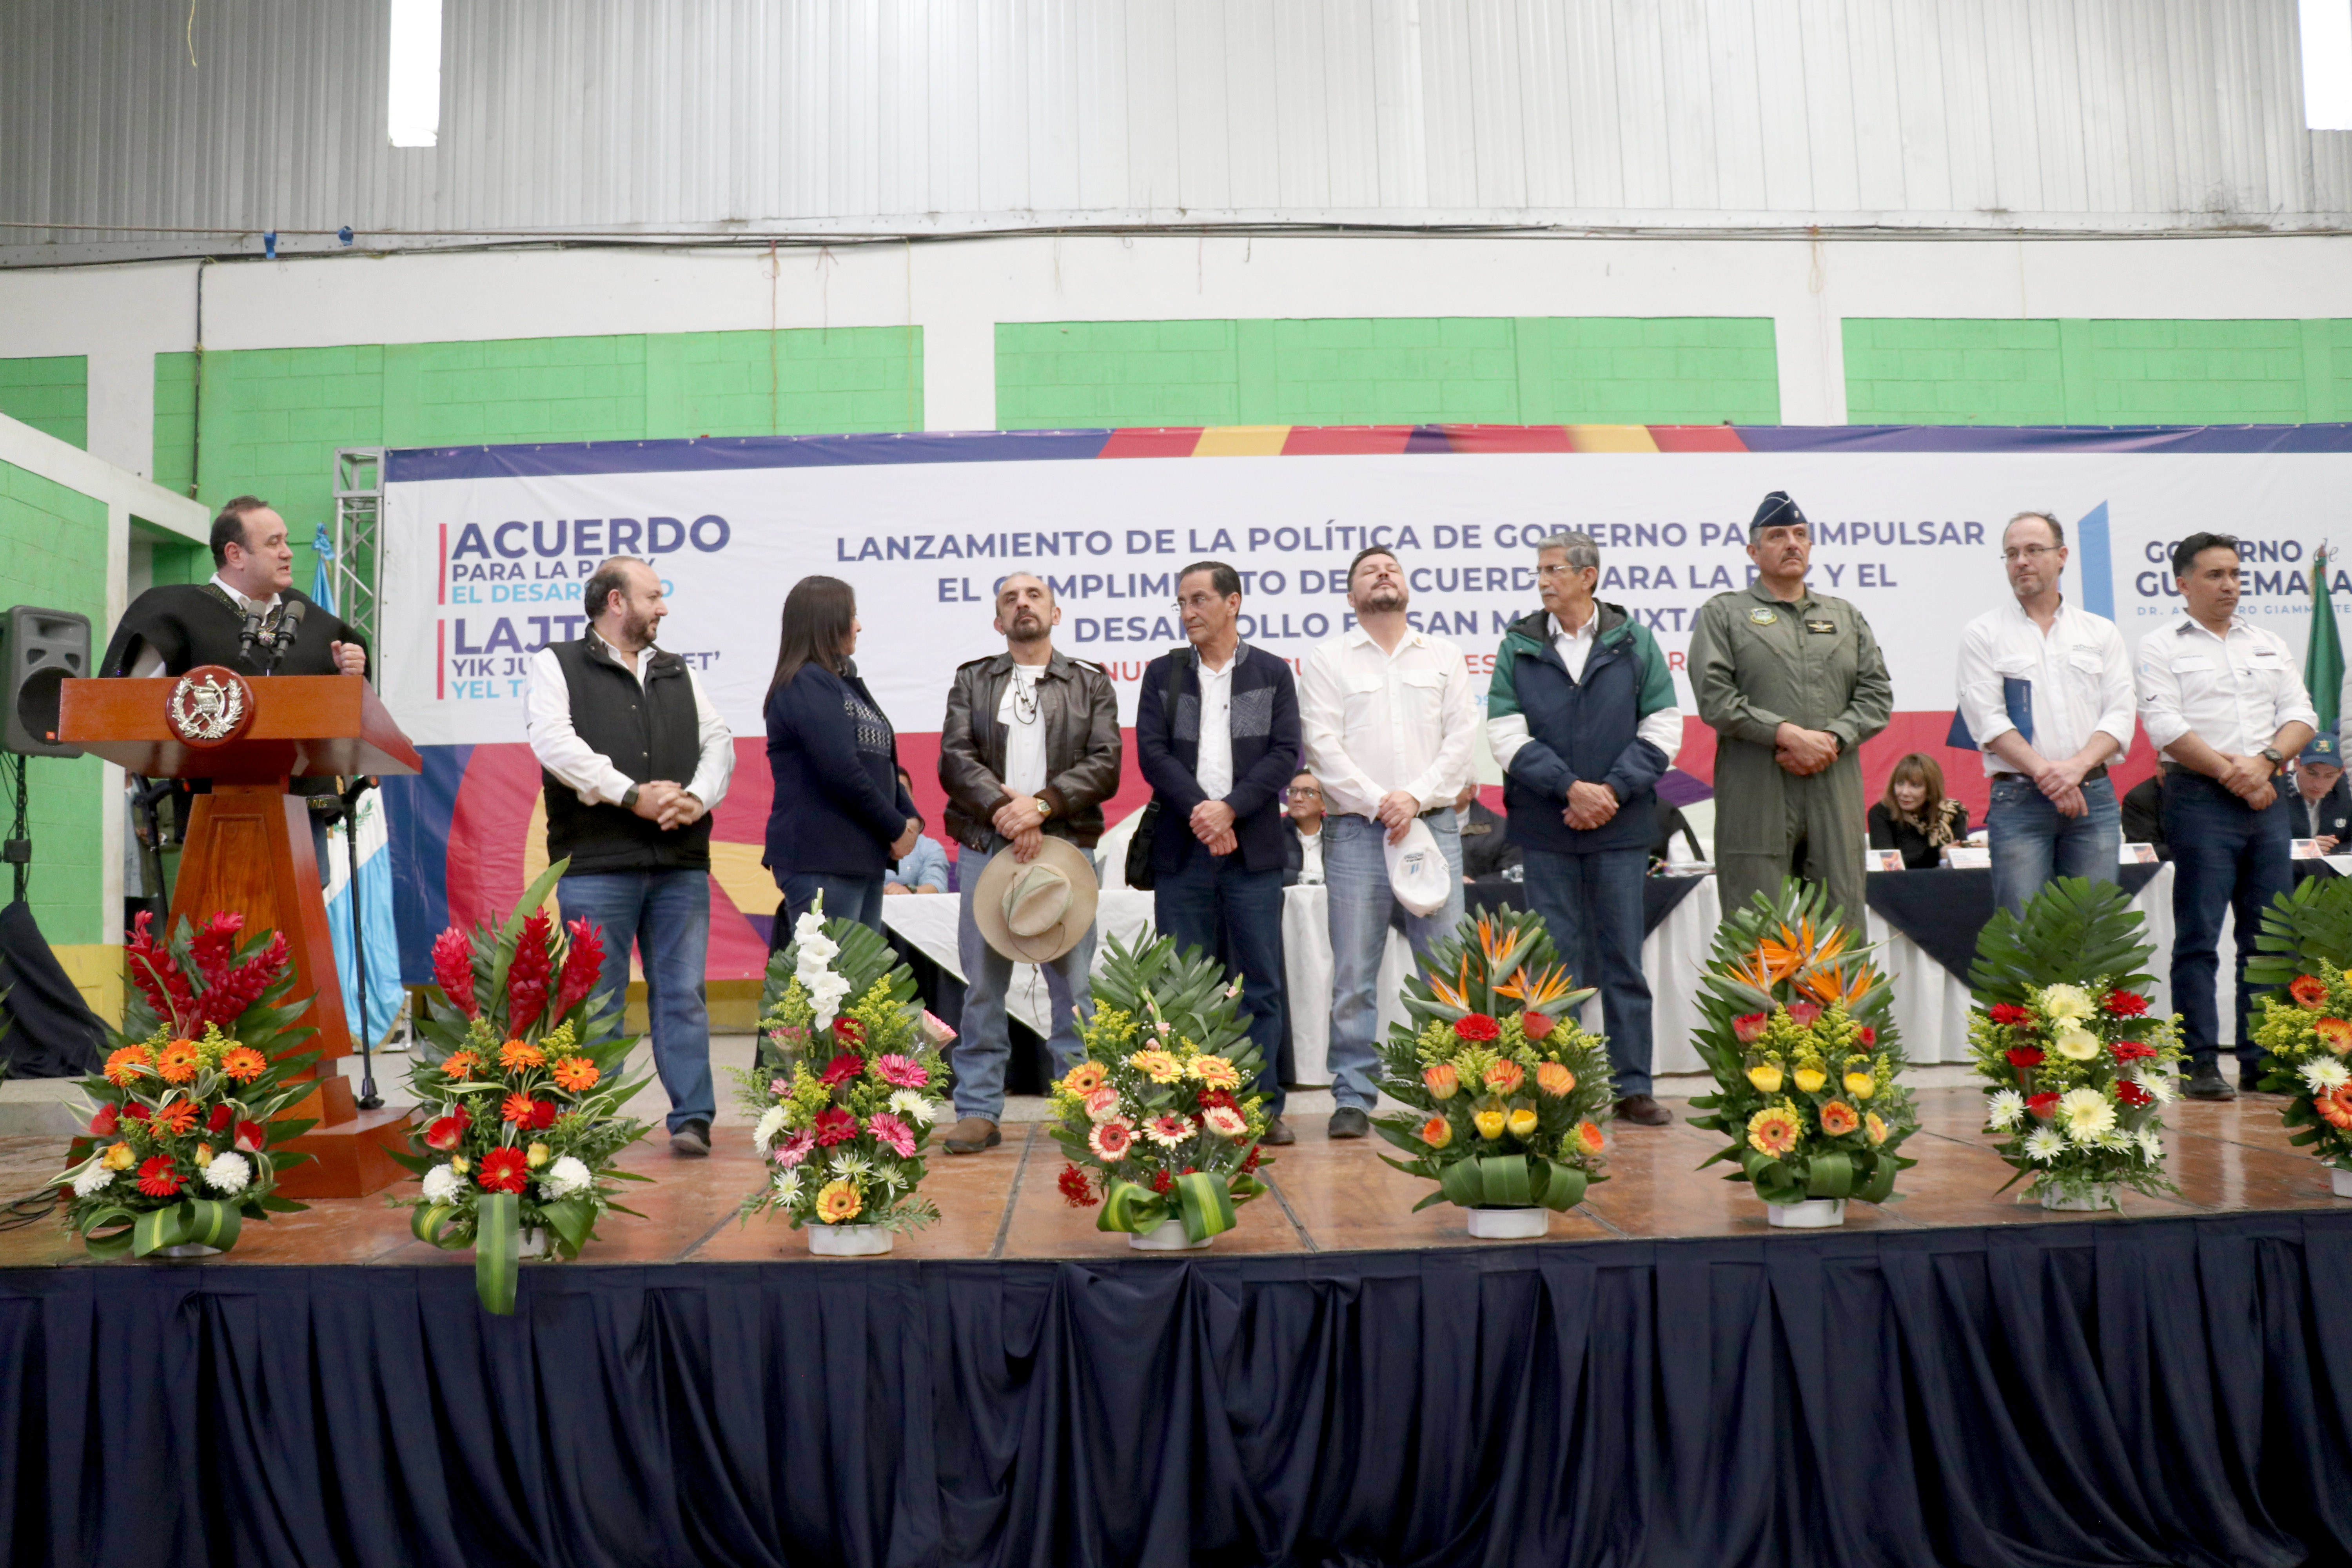 El presidente Alejandro Giammattei presenta a su gabinete a pobladores de San Mateo Ixtatán, Huehuetenango. (Foto Prensa Libre: Mike Castillo)